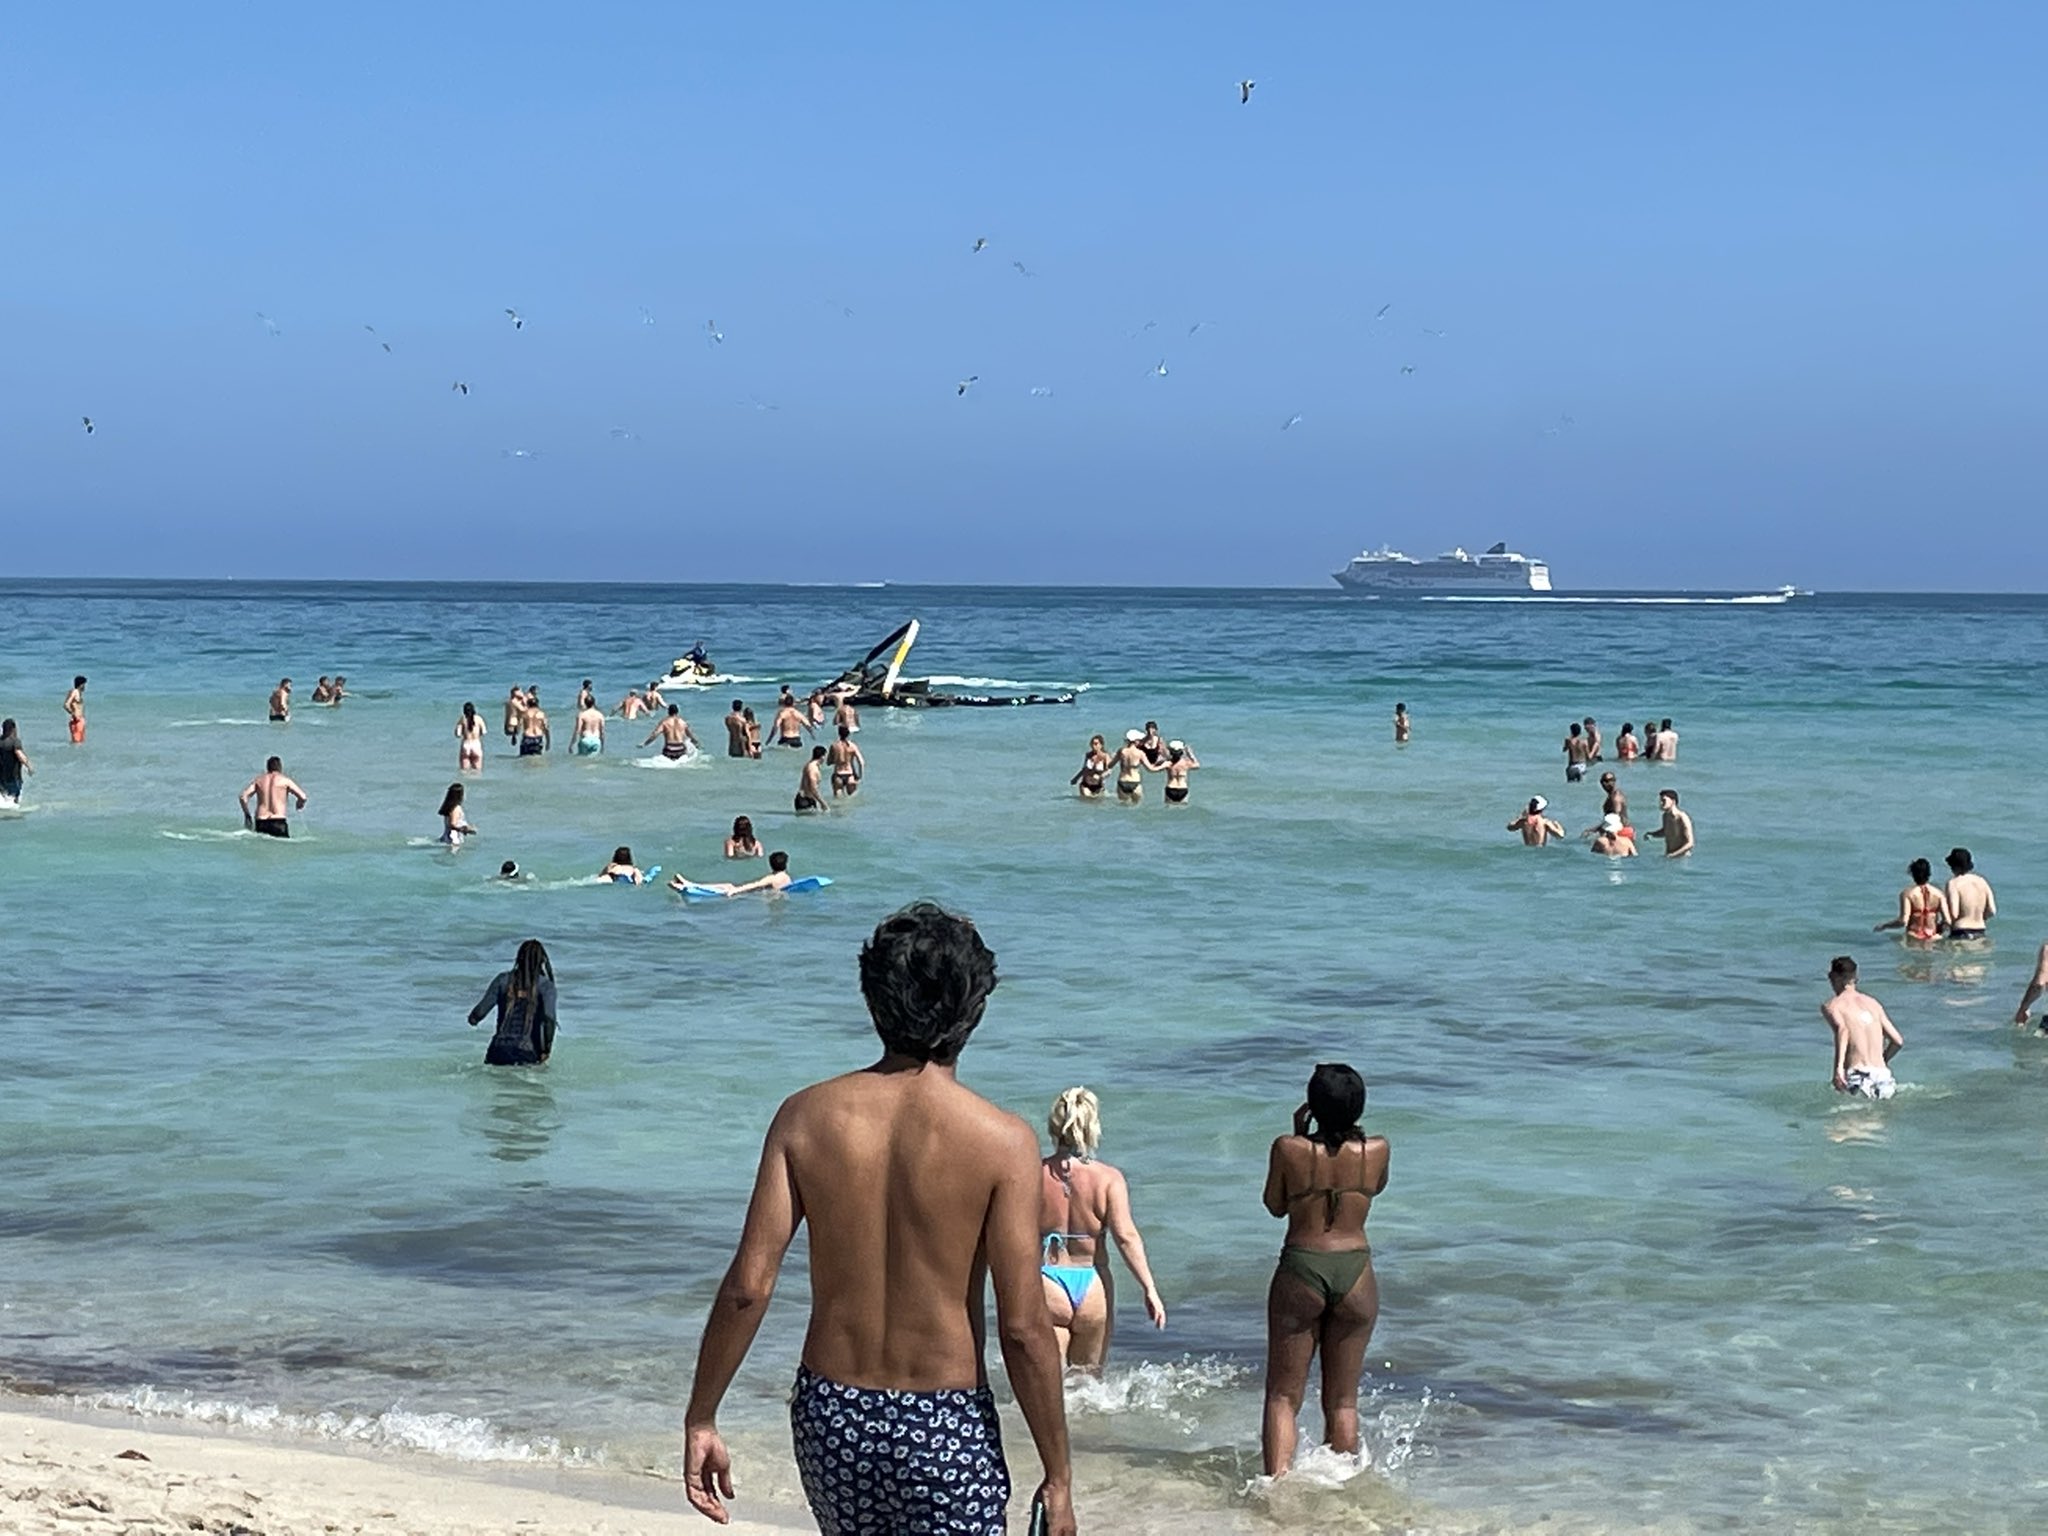 Helicóptero se desploma a unos metros de una playa llena de turistas